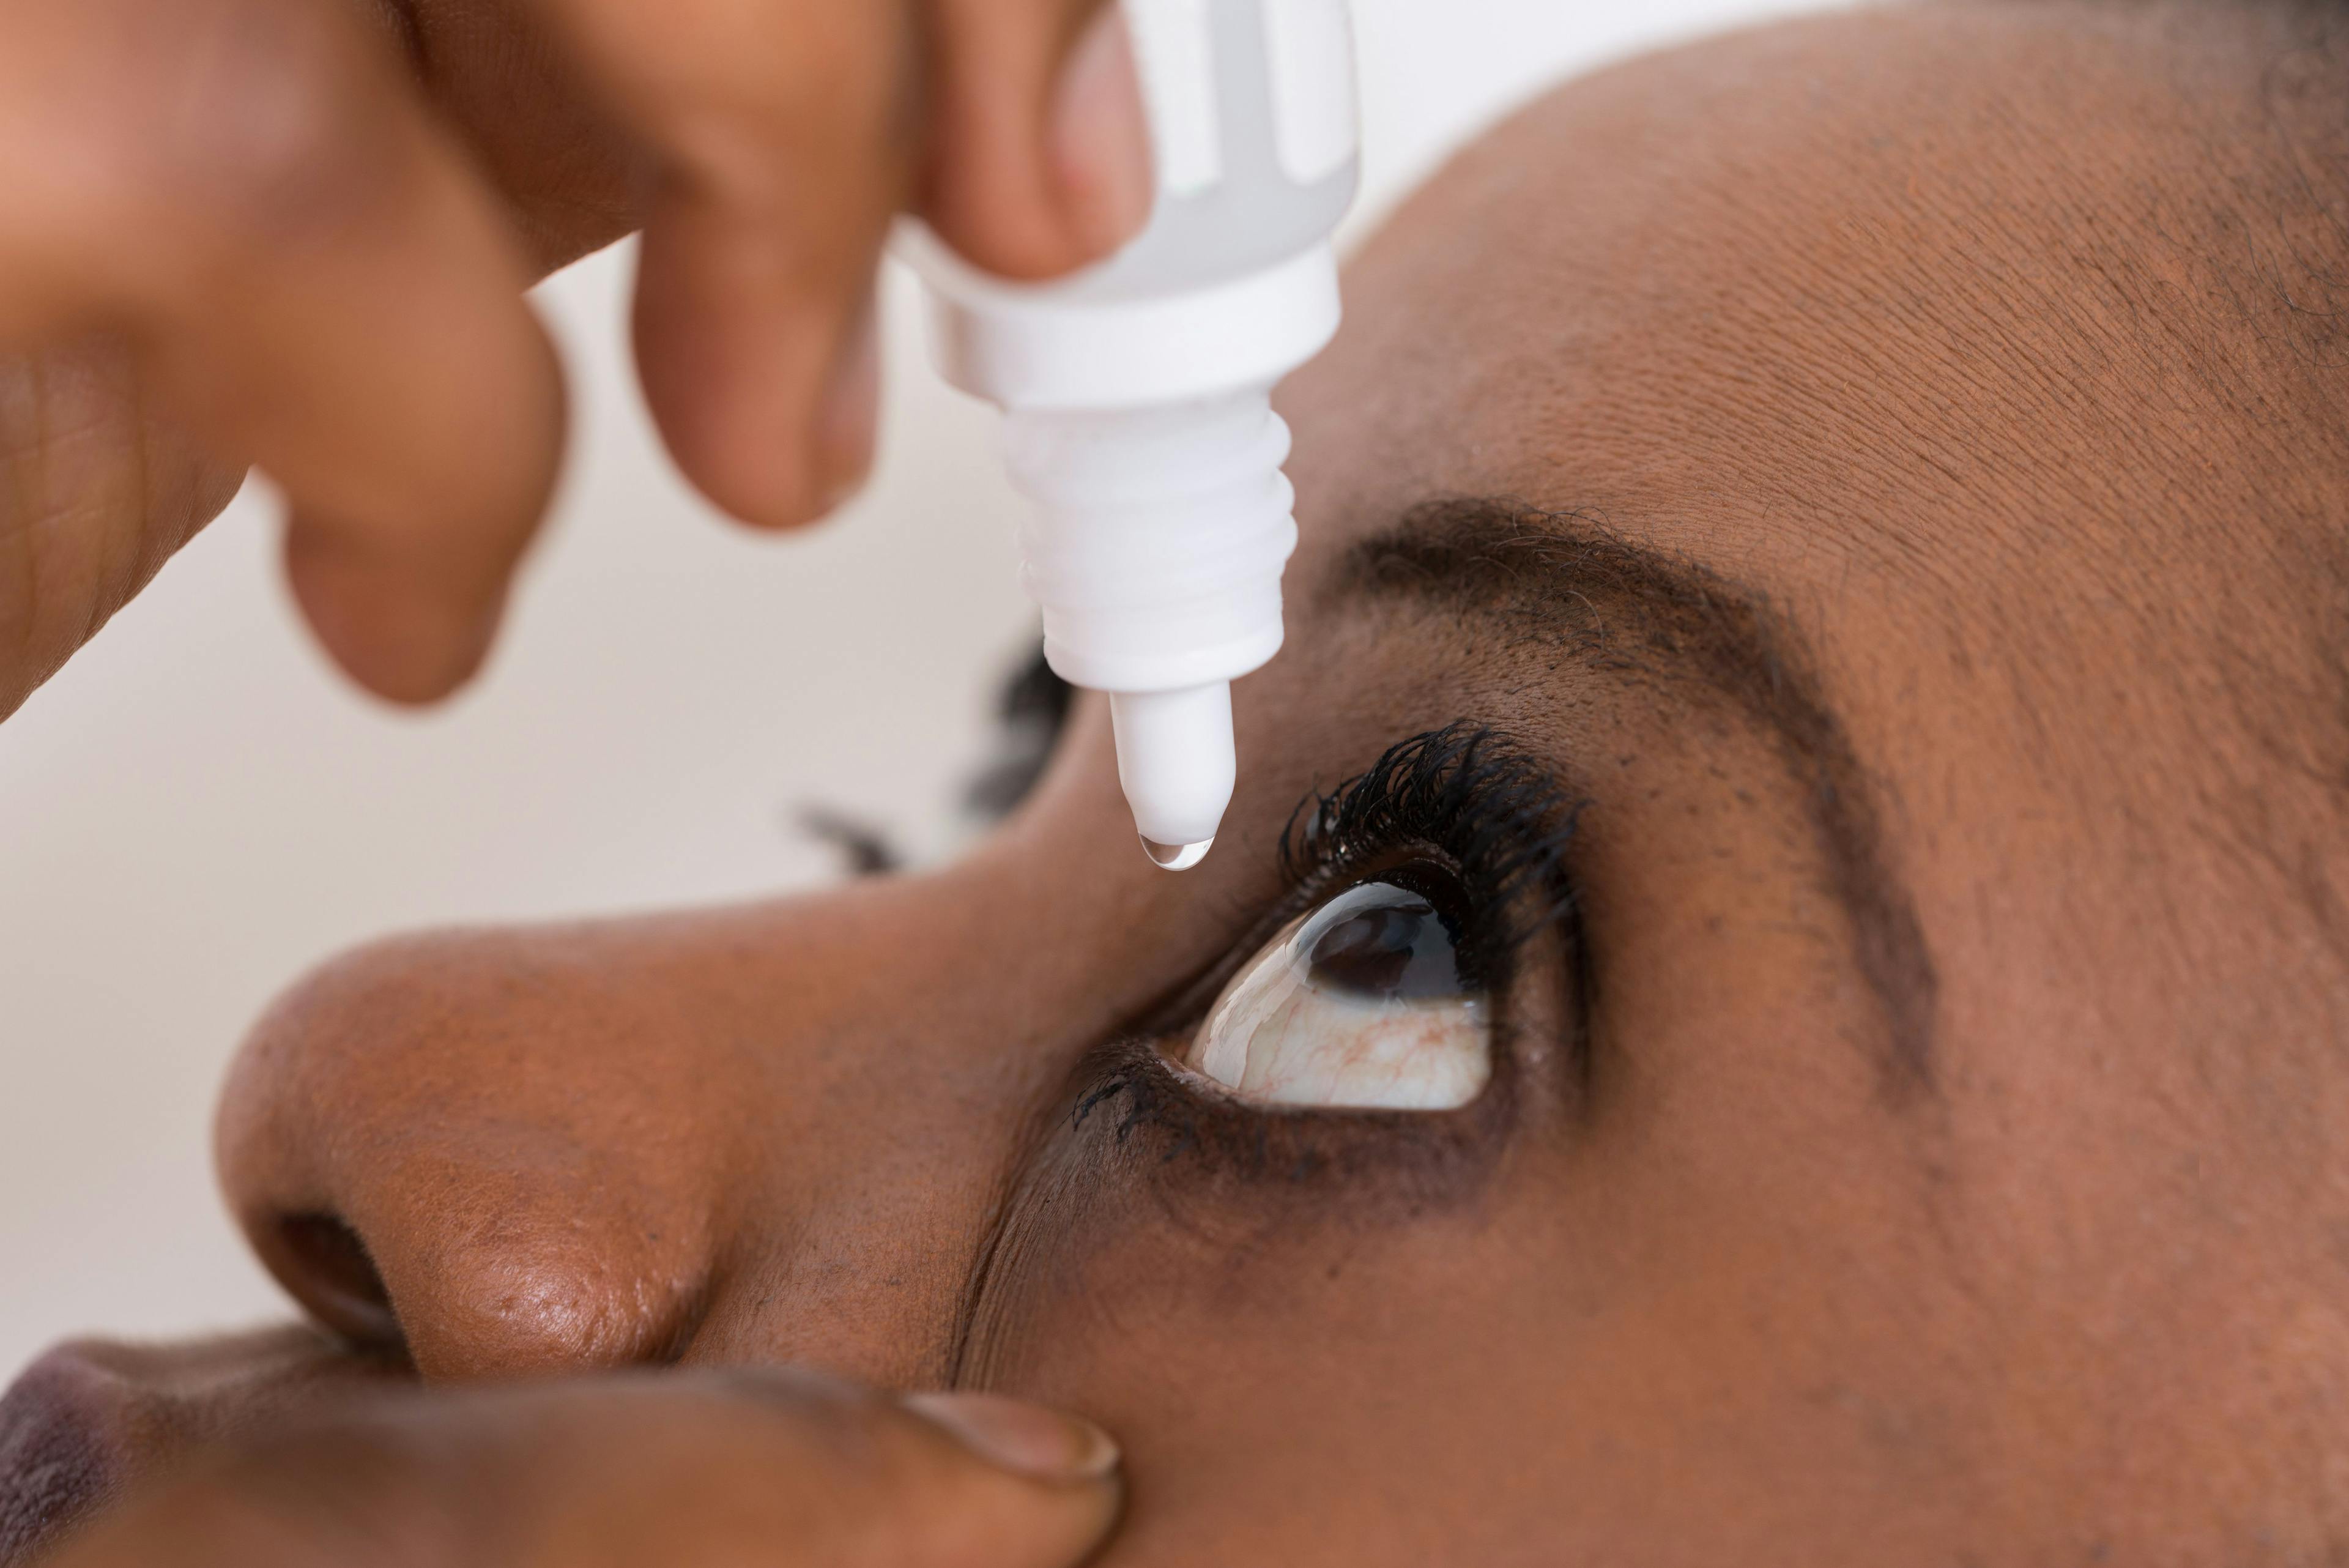 Optimizing management of dry eye disease